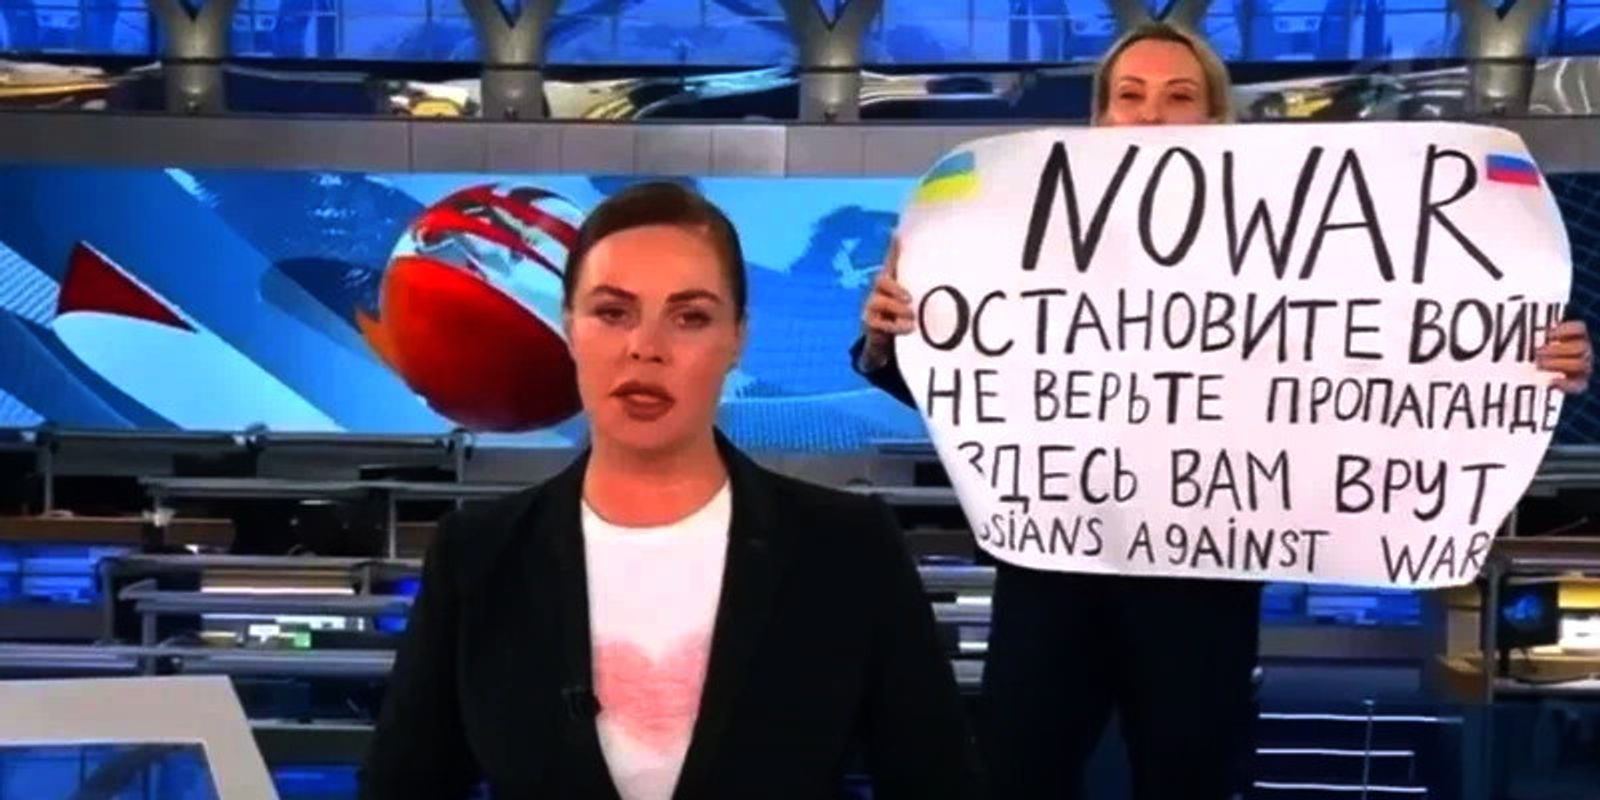 Пикеты, увольнения, отъезд из РФ: как российское общество выступает против войны в Украине